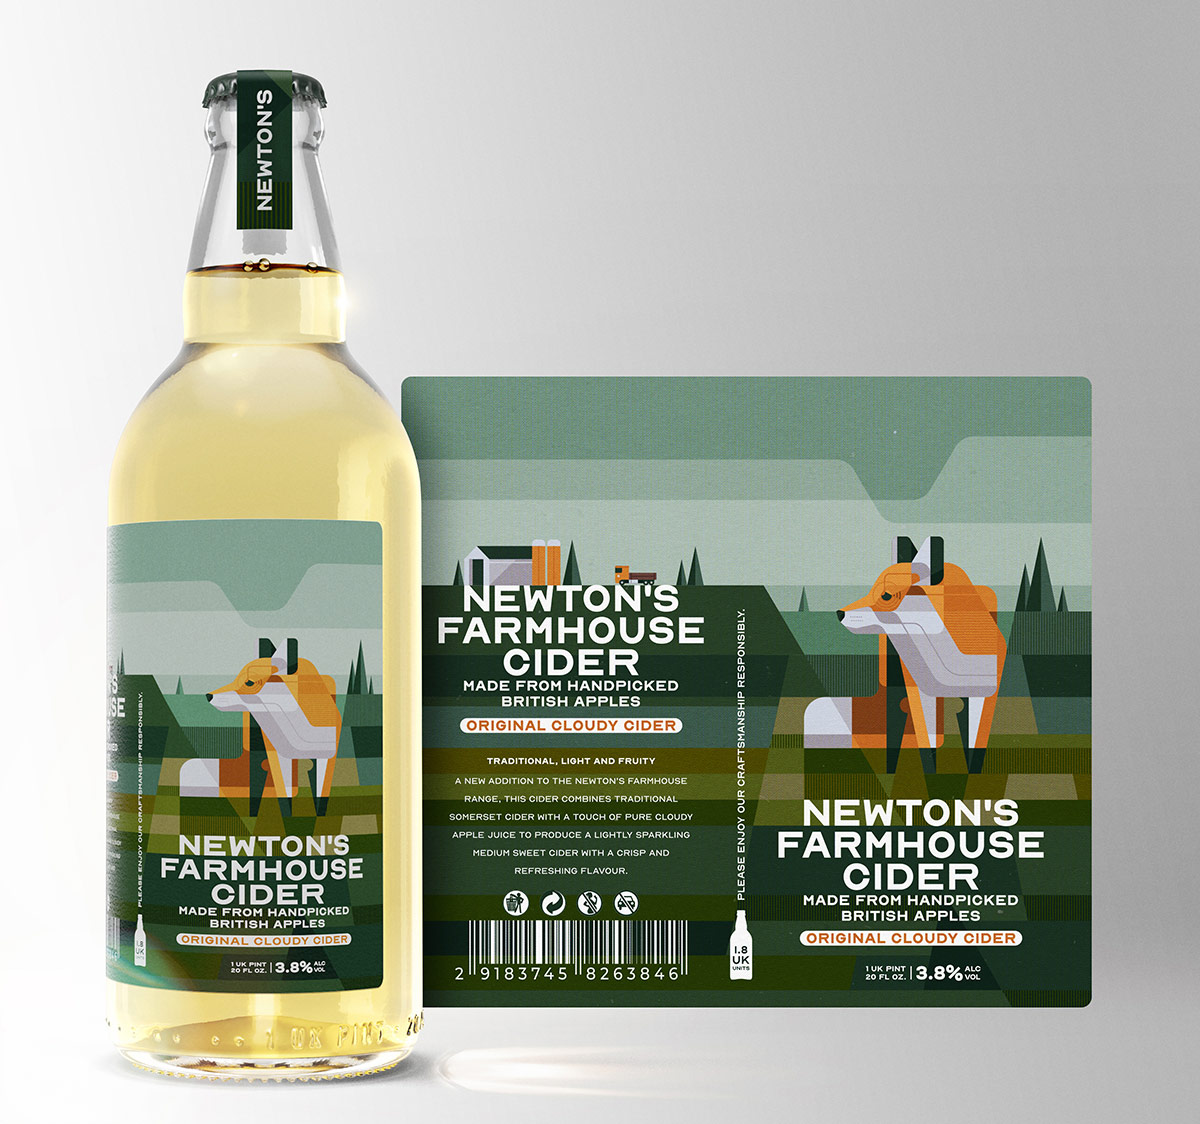 Newton’s Farmhouse Cider Label and Brand Design Concept